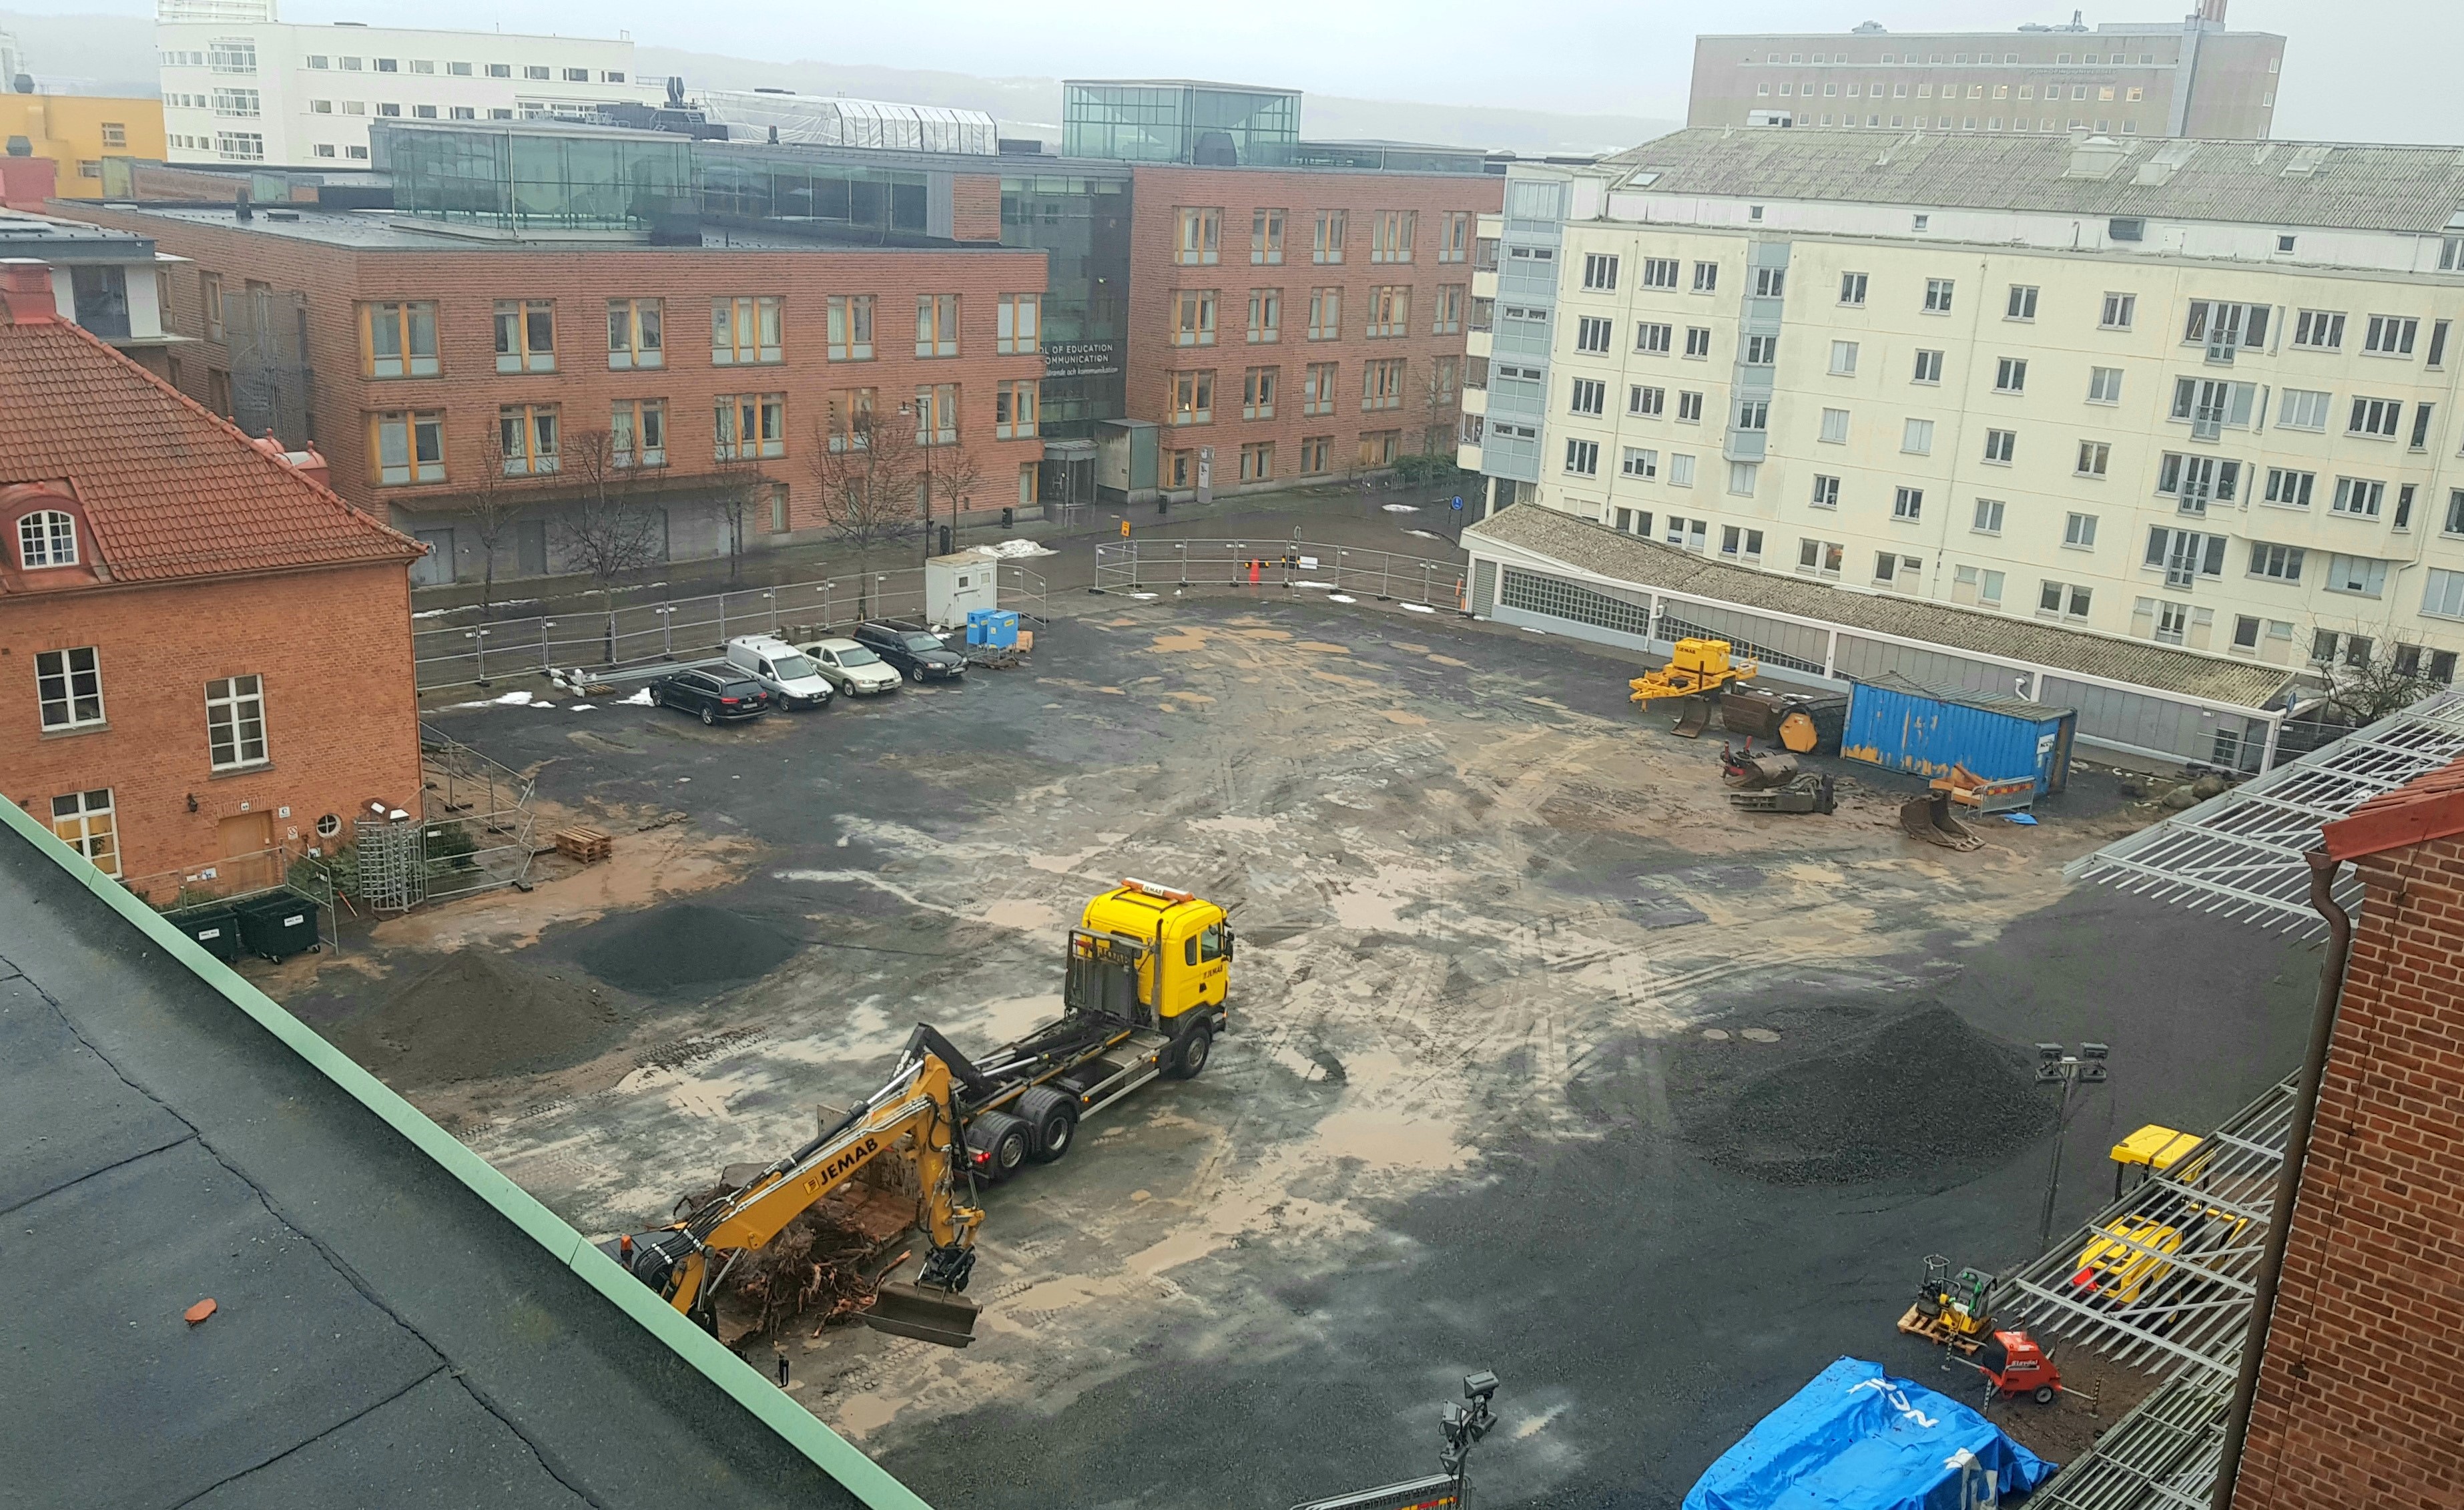 Byggarbetsplatsen sett från nuvarande Science Park House. En gul lastbil och grävskopa är på plats för att börja arbeta.